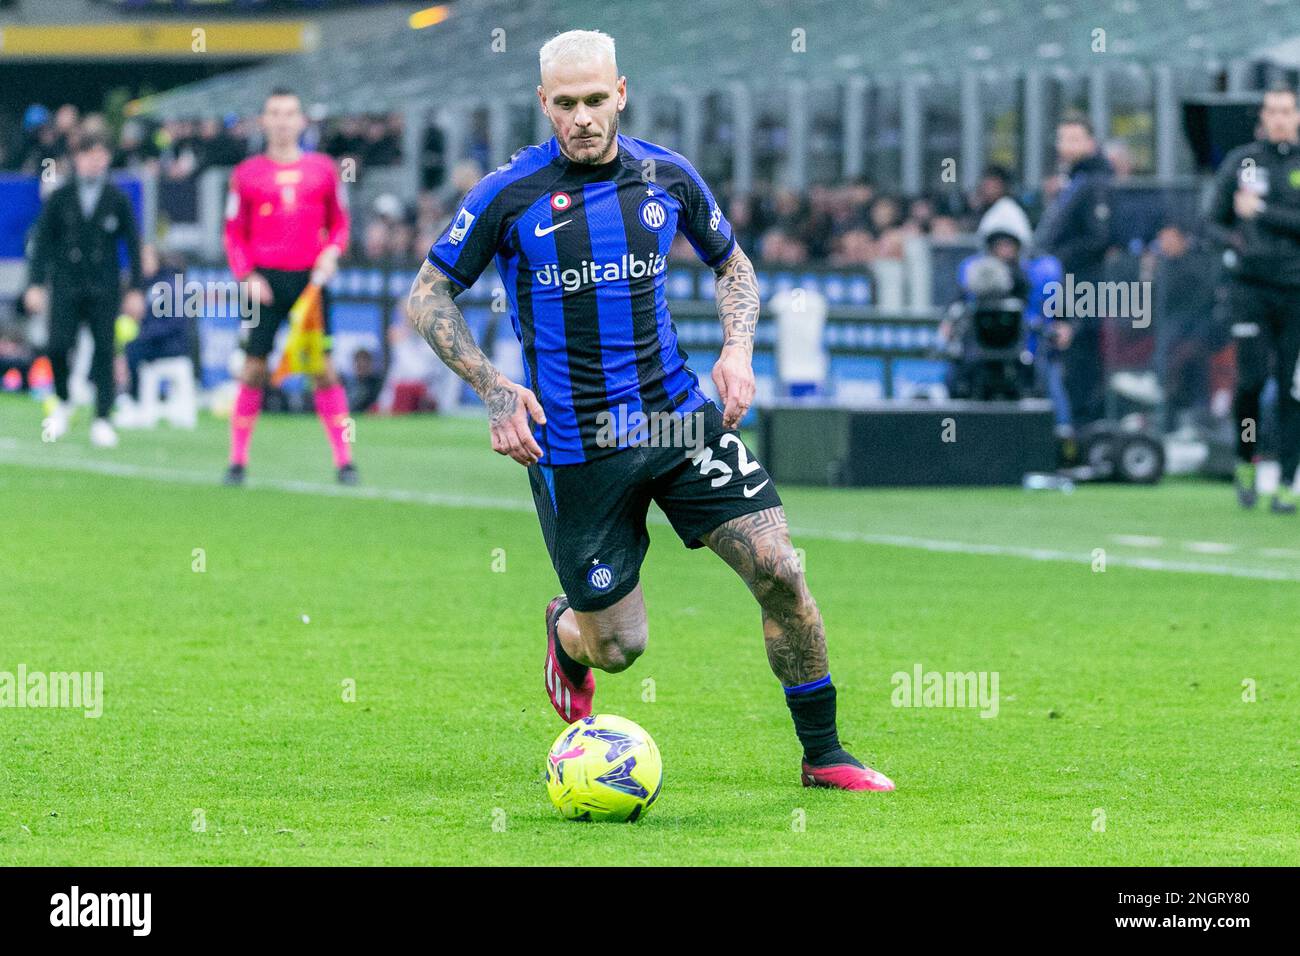 Milan, Italie - février 18 2023 - Inter-Udinese série A - dimarco federico f.c. internazionale crédit: Christian Santi/Alamy Live News Banque D'Images